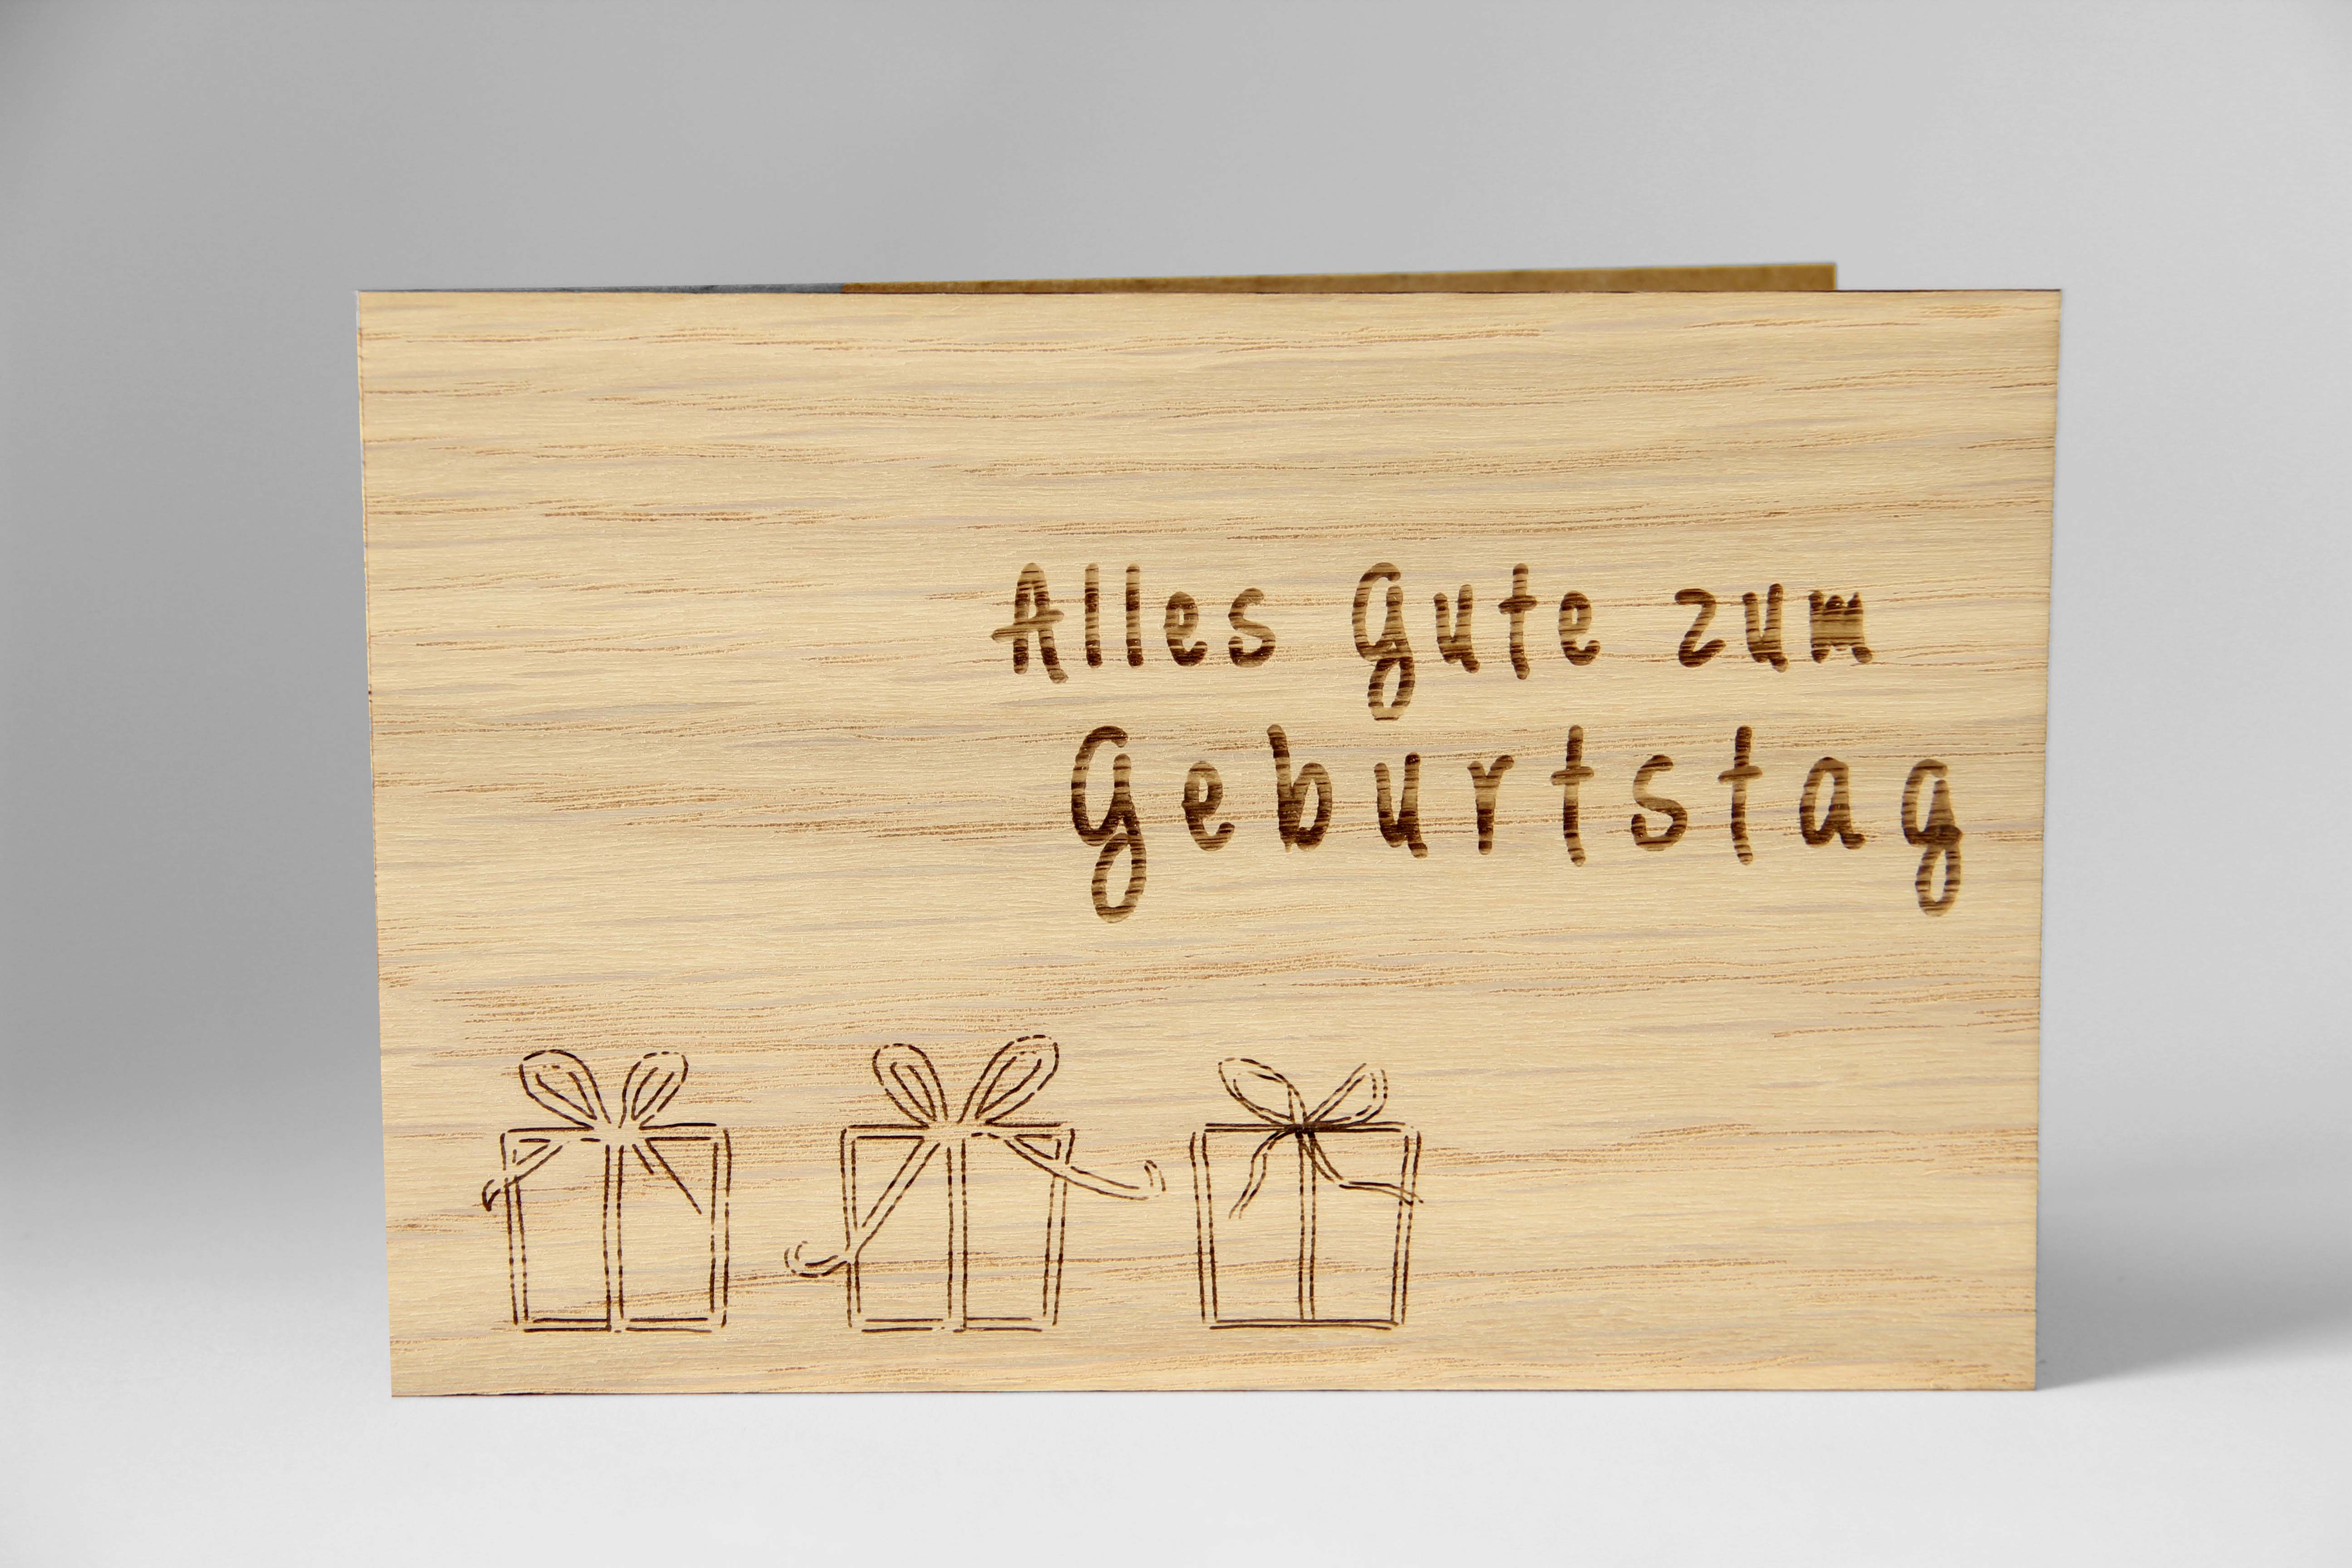 Holzgrusskarten - Geburtstagskarte "Alles Gute zum Geburtstag" aus Eiche, Geschenkpakete